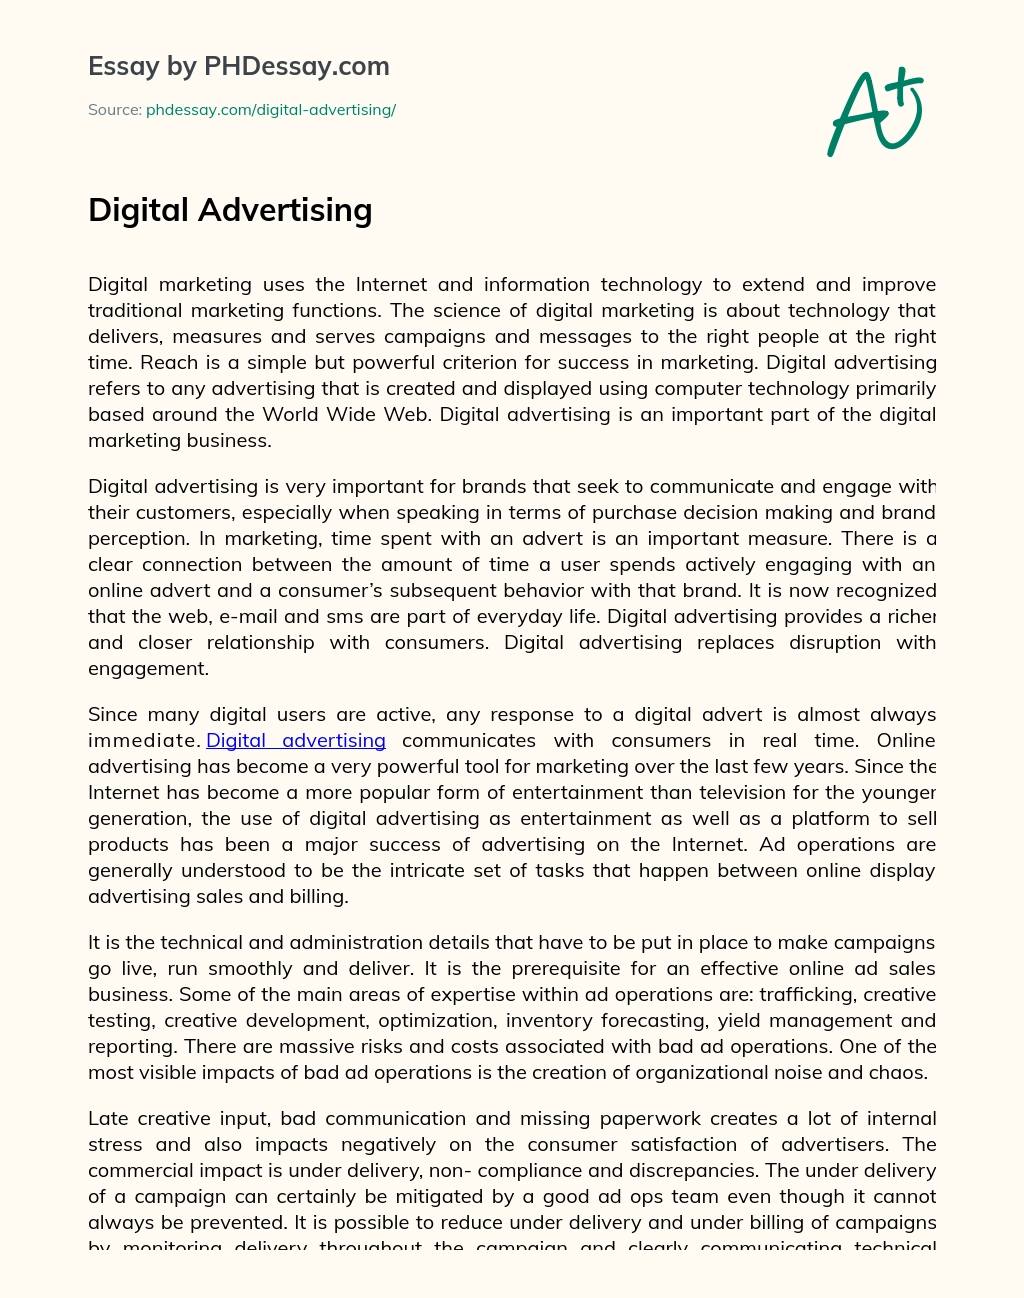 Digital Advertising essay